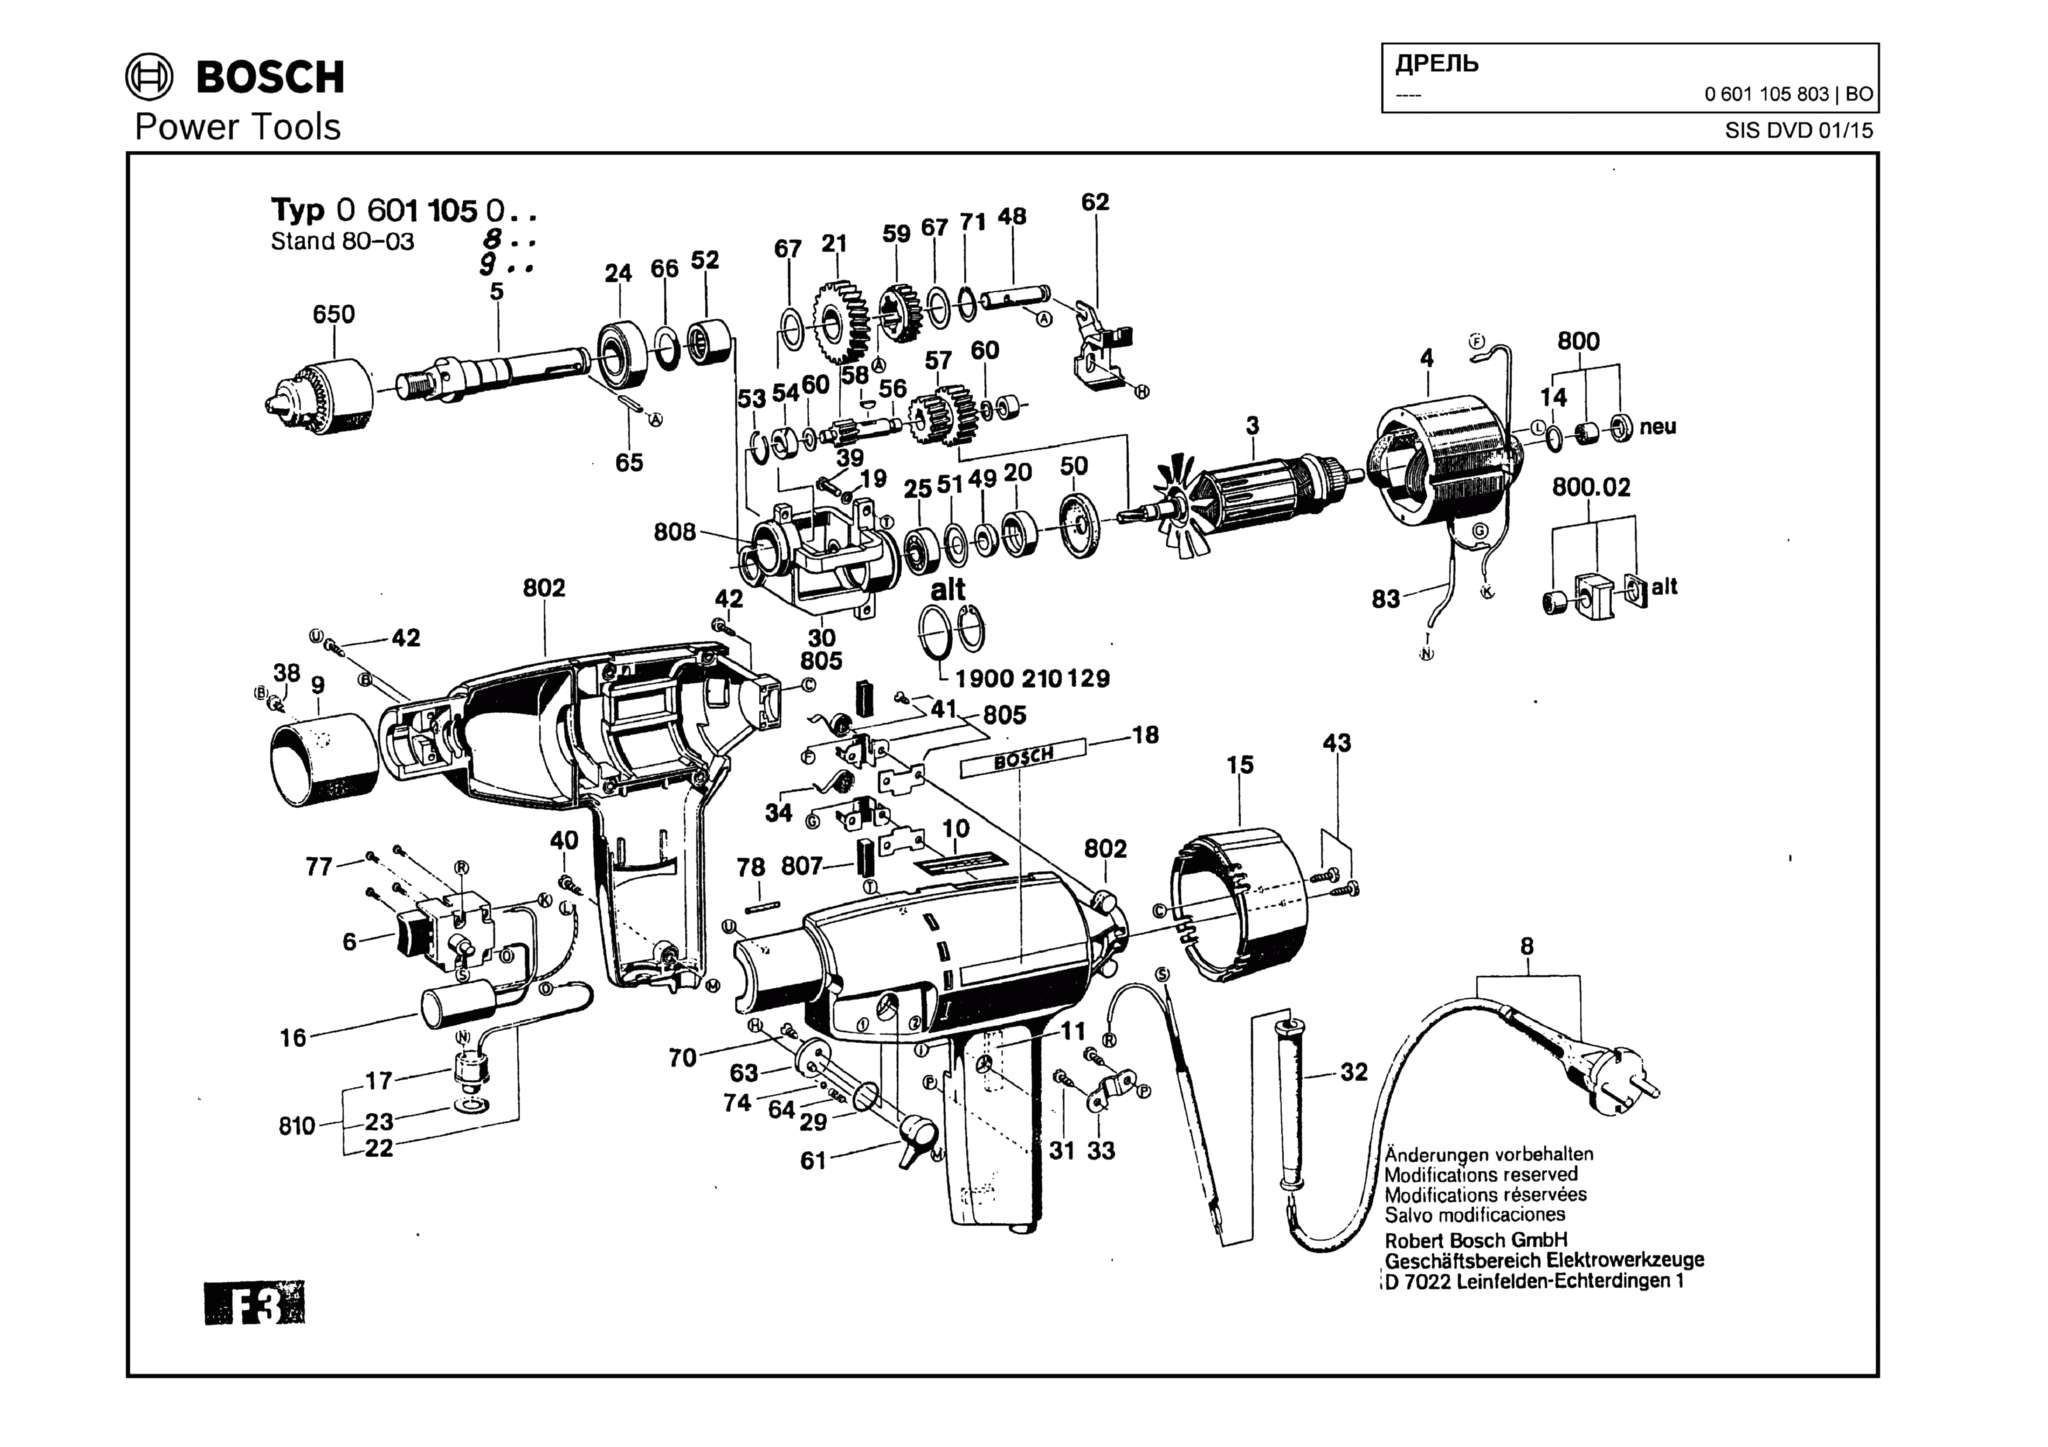 Запчасти, схема и деталировка Bosch (ТИП 0601105803)